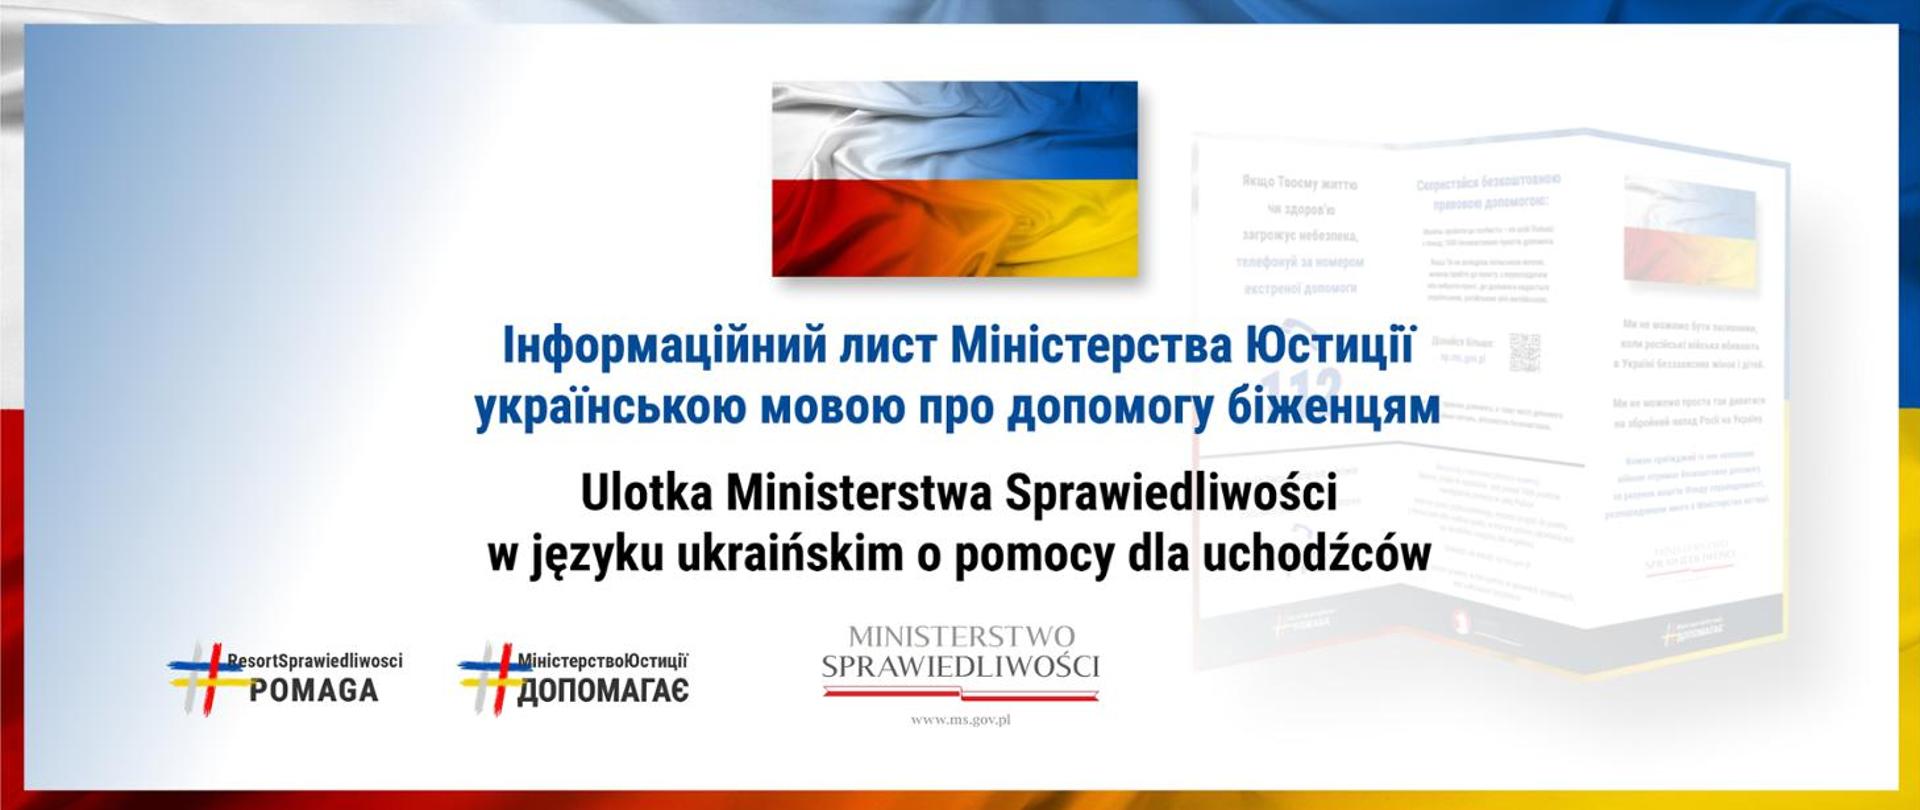 Листівка Міністерства юстиції українською мовою про допомогу біженцям